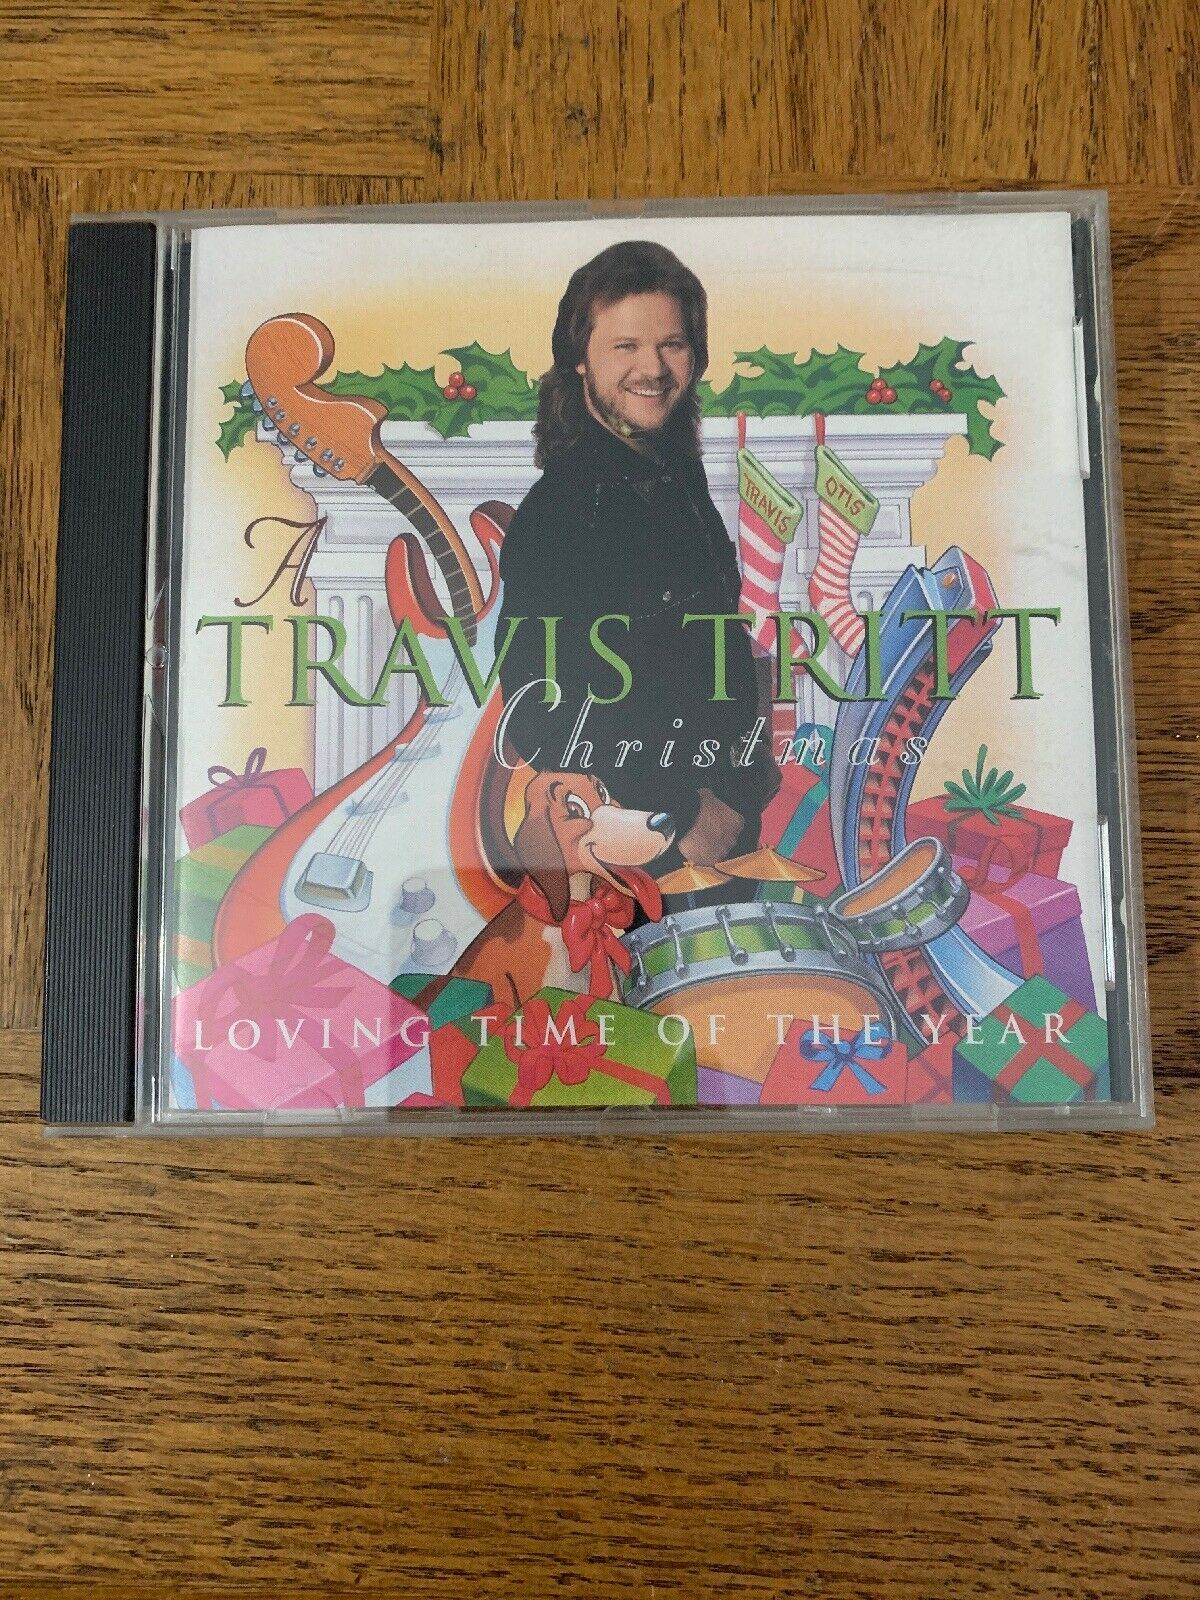 Travis Tritt Christmas CD CDs